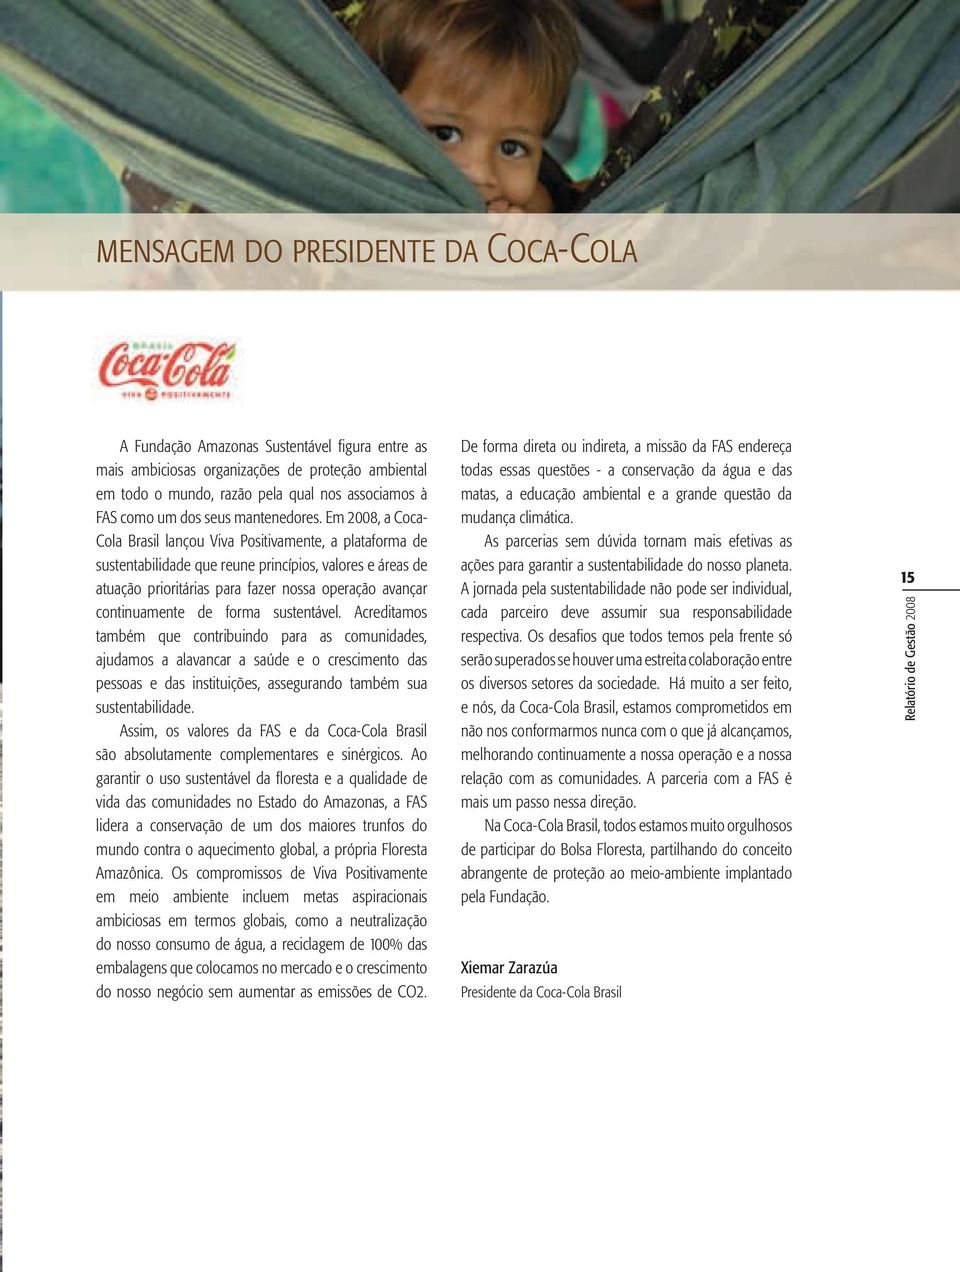 Em 2008, a Coca- Cola Brasil lançou Viva Positivamente, a plataforma de sustentabilidade que reune princípios, valores e áreas de atuação prioritárias para fazer nossa operação avançar continuamente